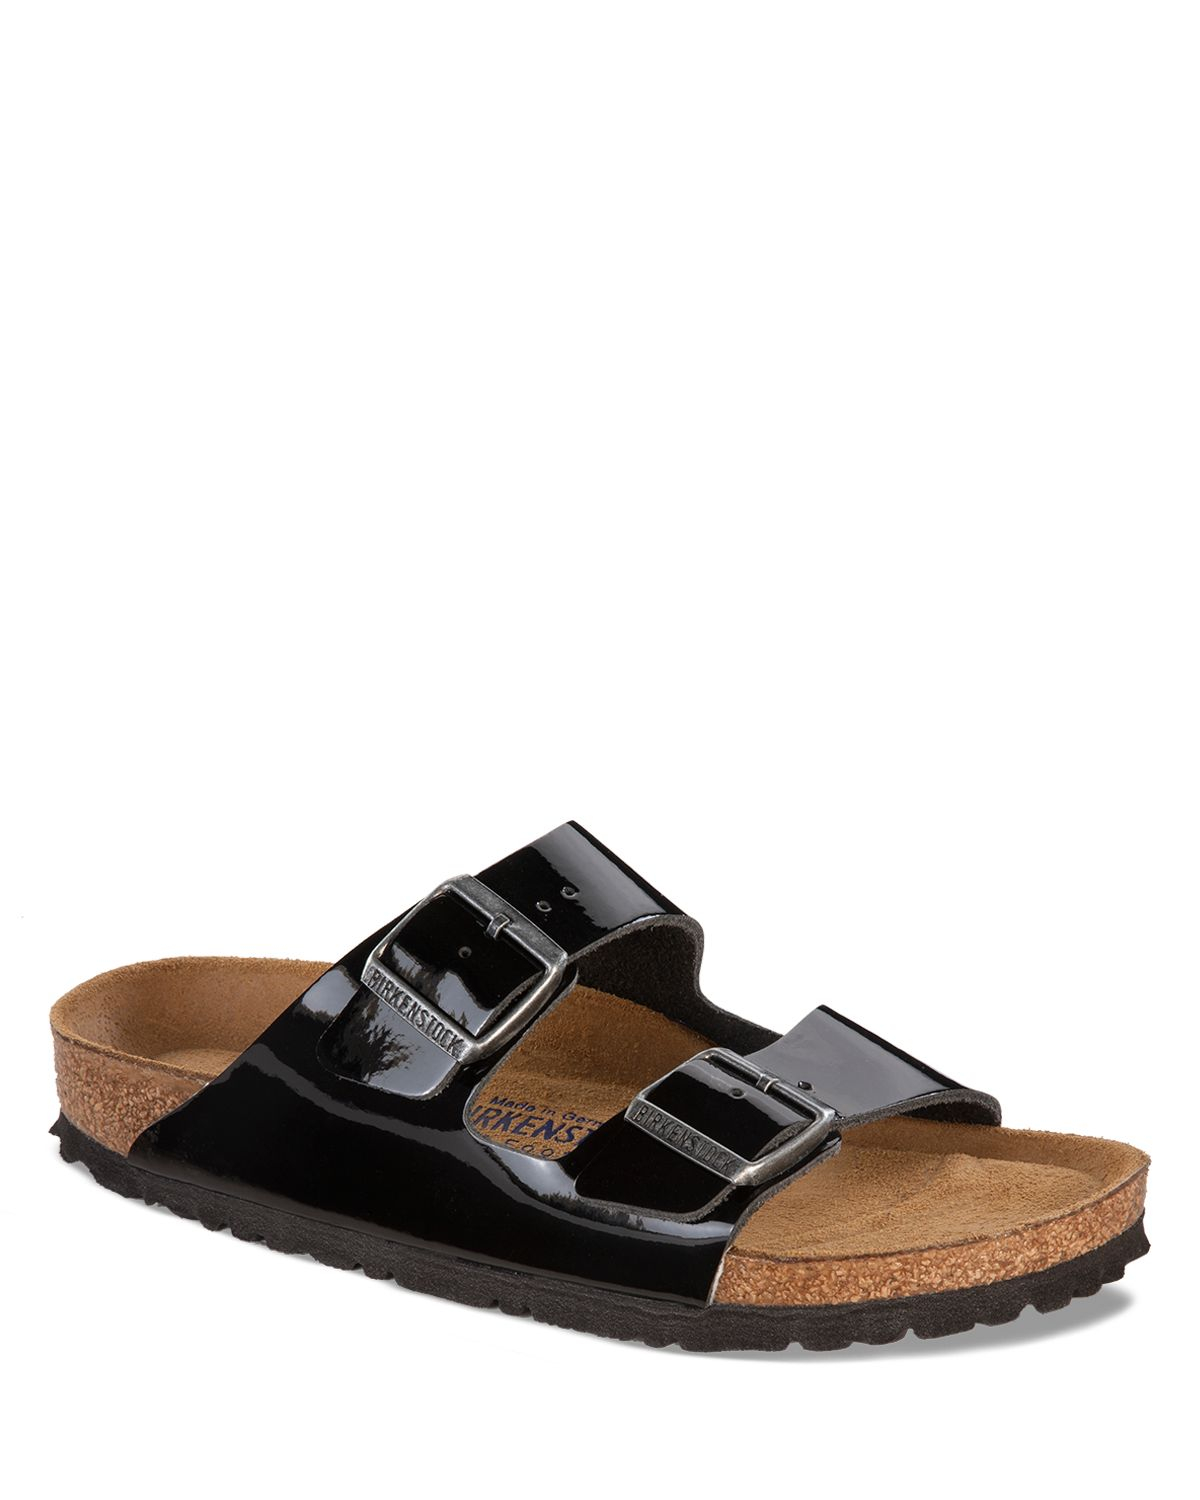 Birkenstock Flat Sandals - Patent Arizona in Black | Lyst